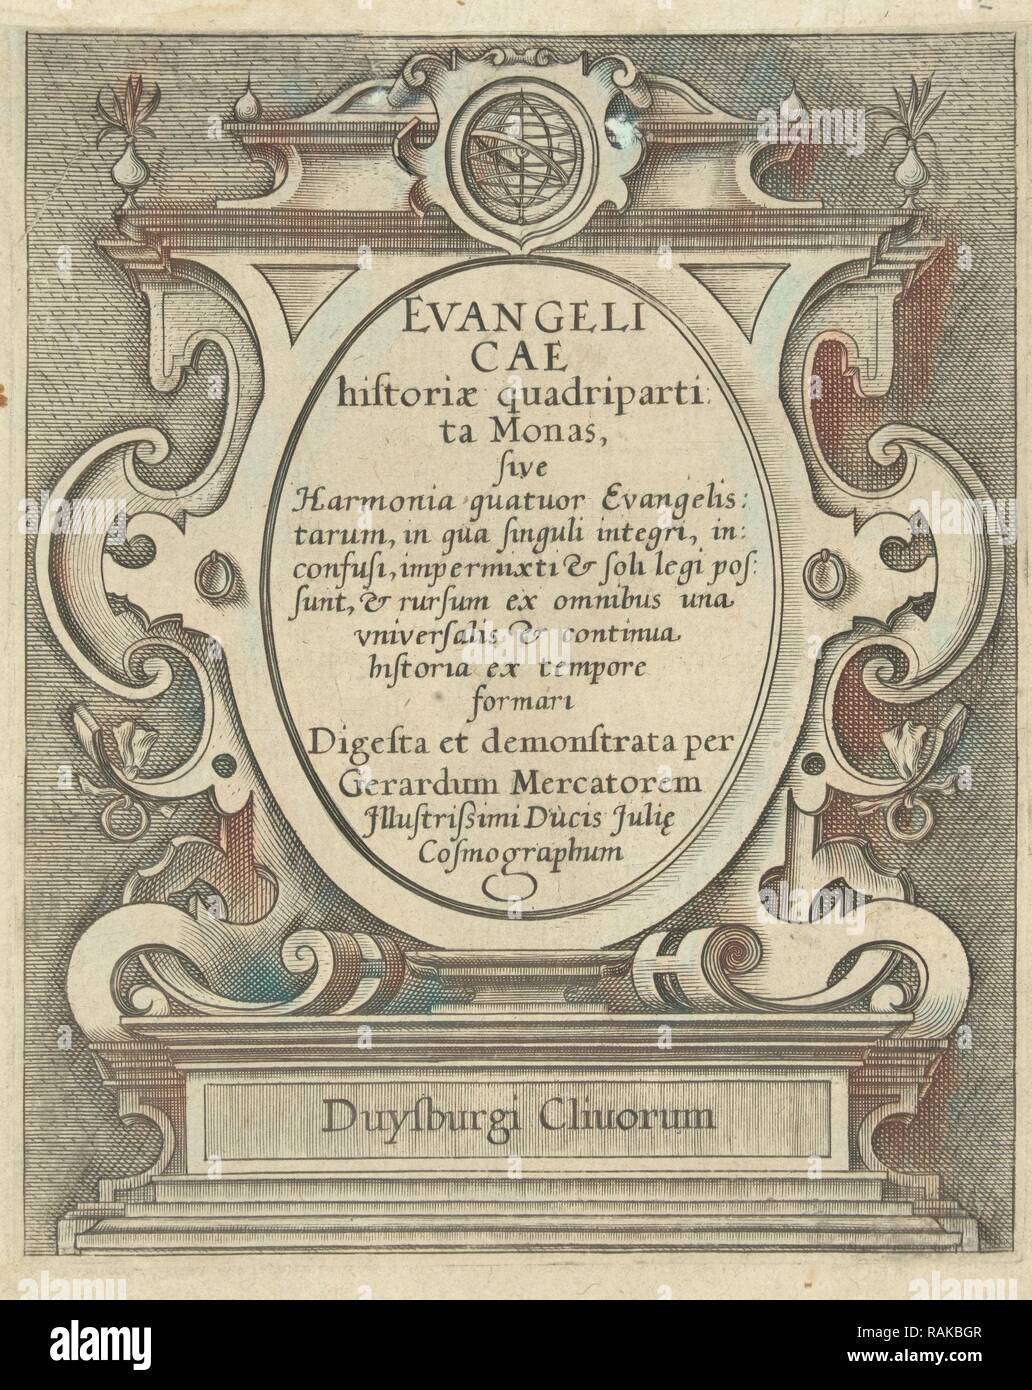 Evangelicae historiae, anonimo, c. 1500 - 1592. Reinventato da Gibon. Arte Classica con un tocco di moderno reinventato Foto Stock